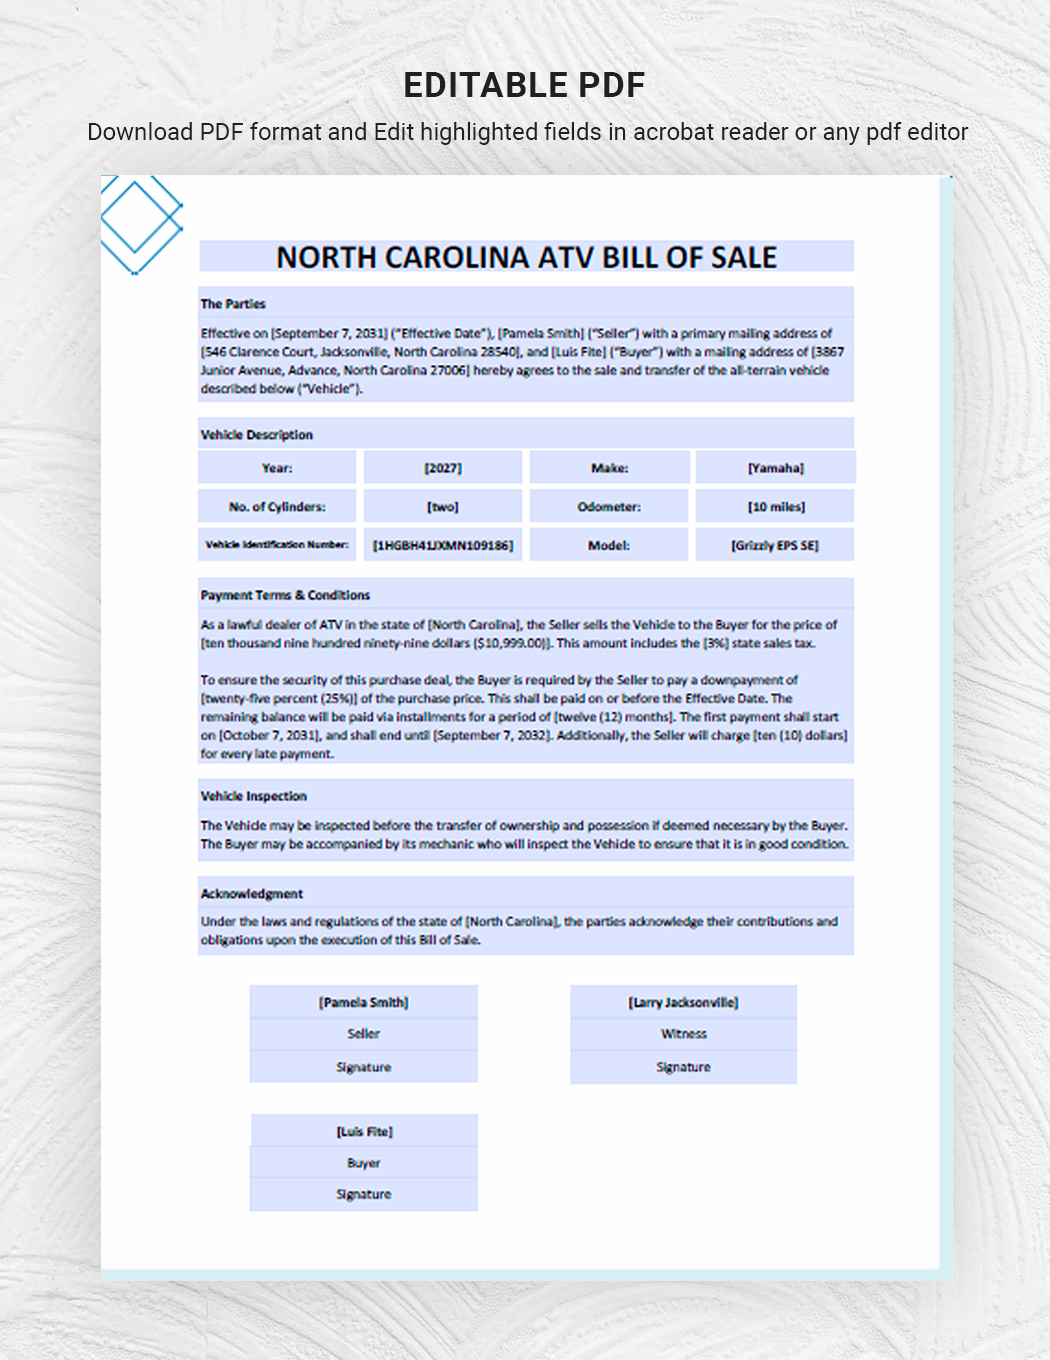 North Carolina ATV Bill of Sale Template